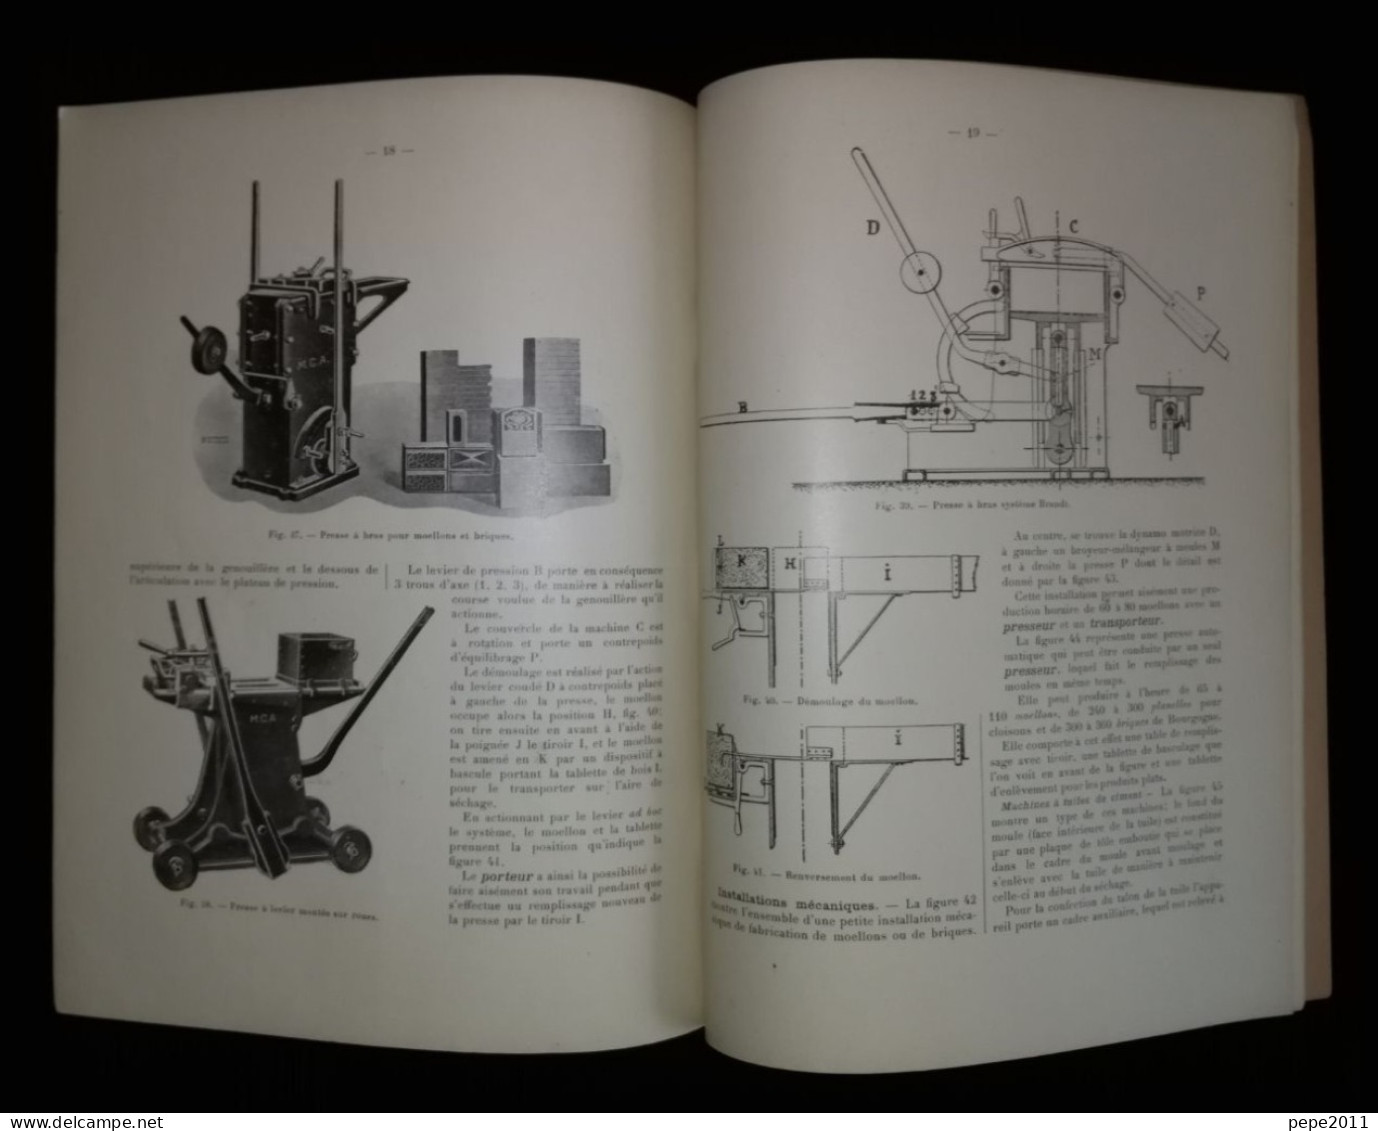 Technologiques de la Céramique du Bâtiment par J. AUPETIT - 5 Fascicules - 1924-25